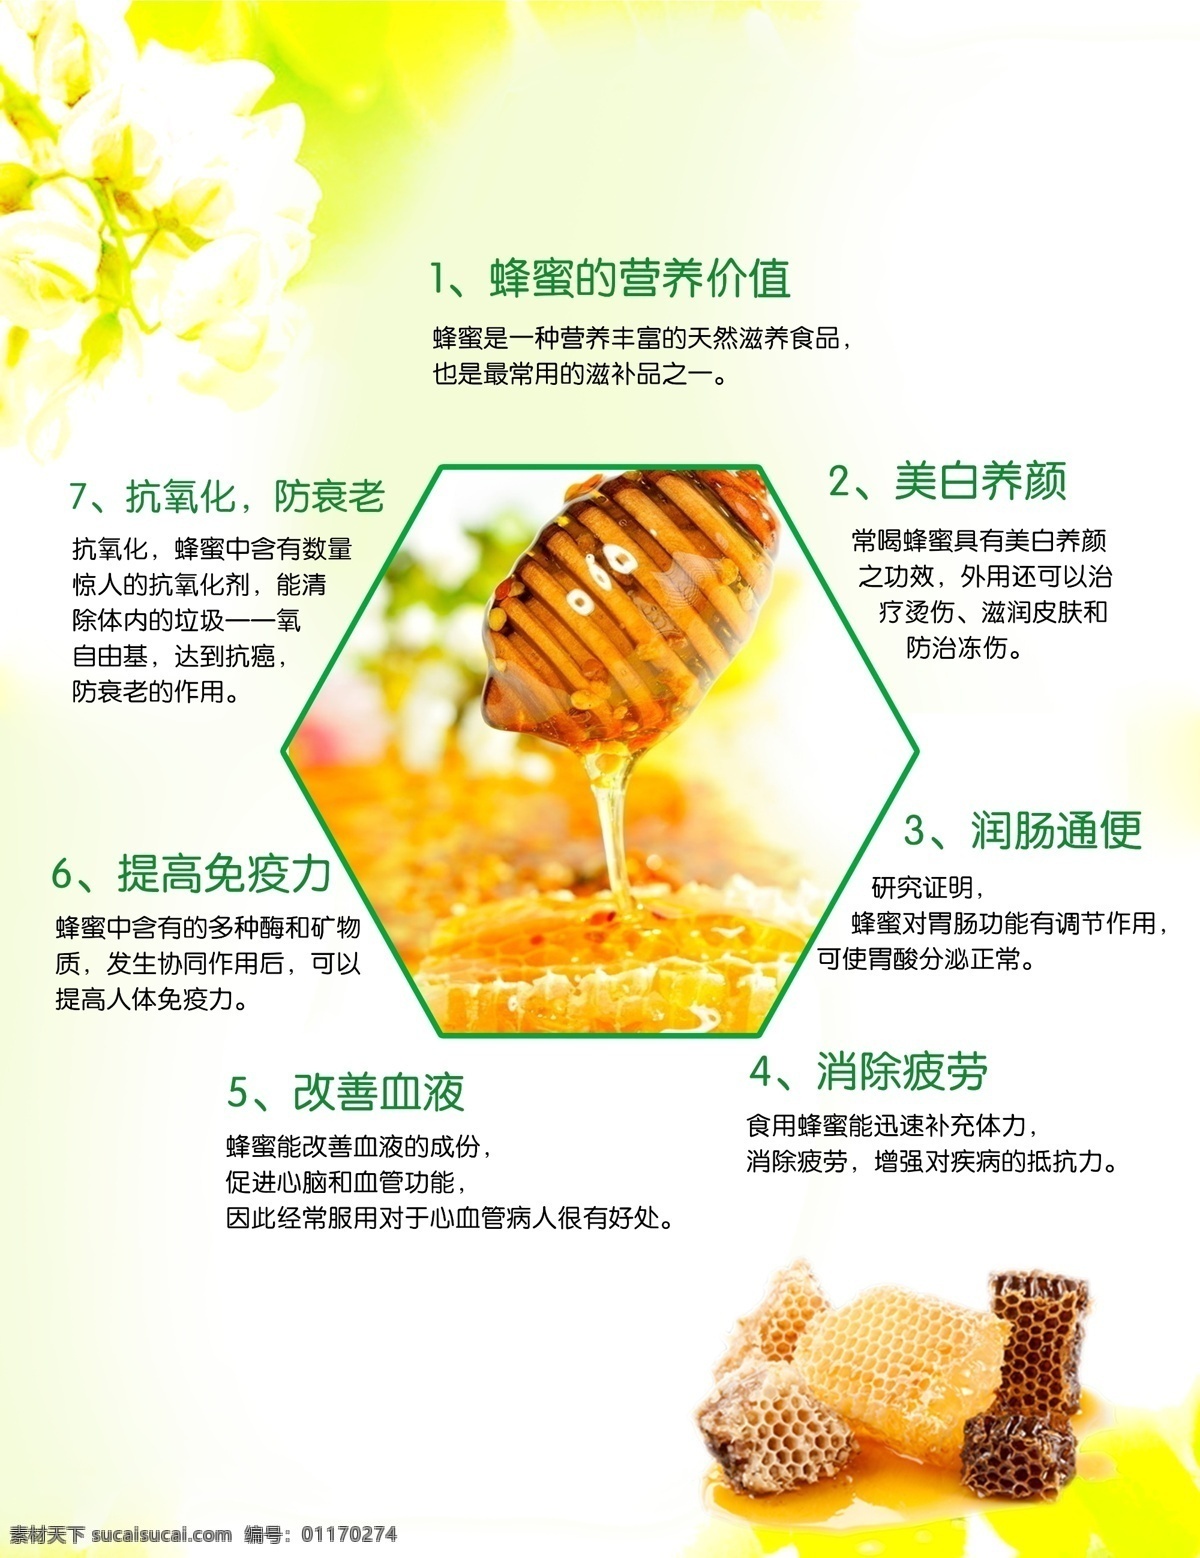 蜂胶 蜂蜜 健康 养生 绿色 惠芝园 蜜蜂 蜂蜜功效 黄色背景 清新背景 漂亮背景 海报